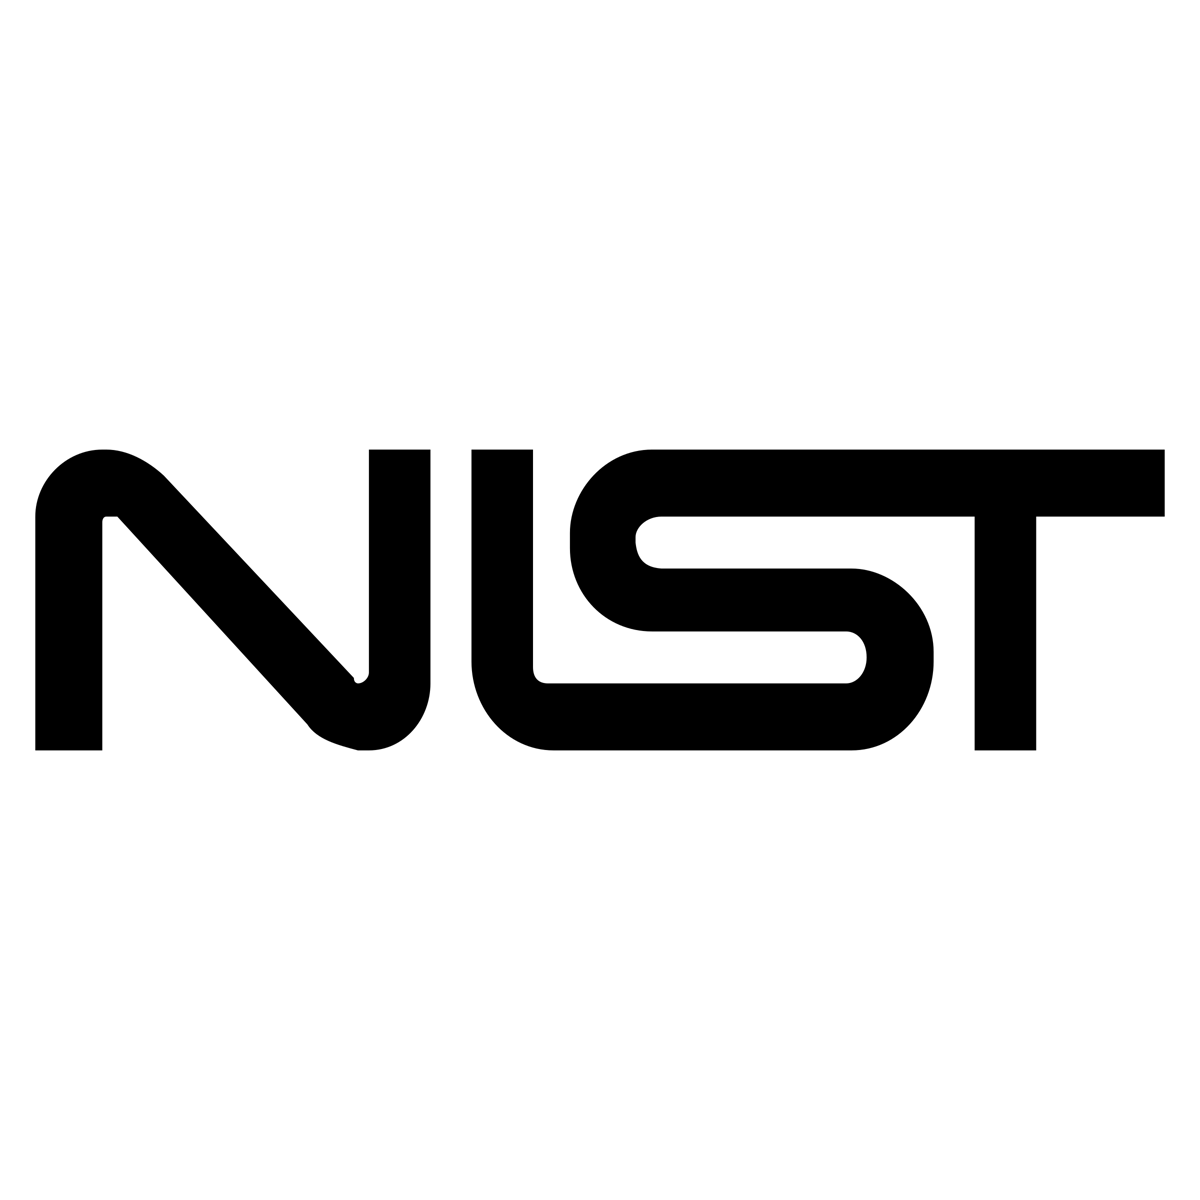 nist-logo-png-transparent